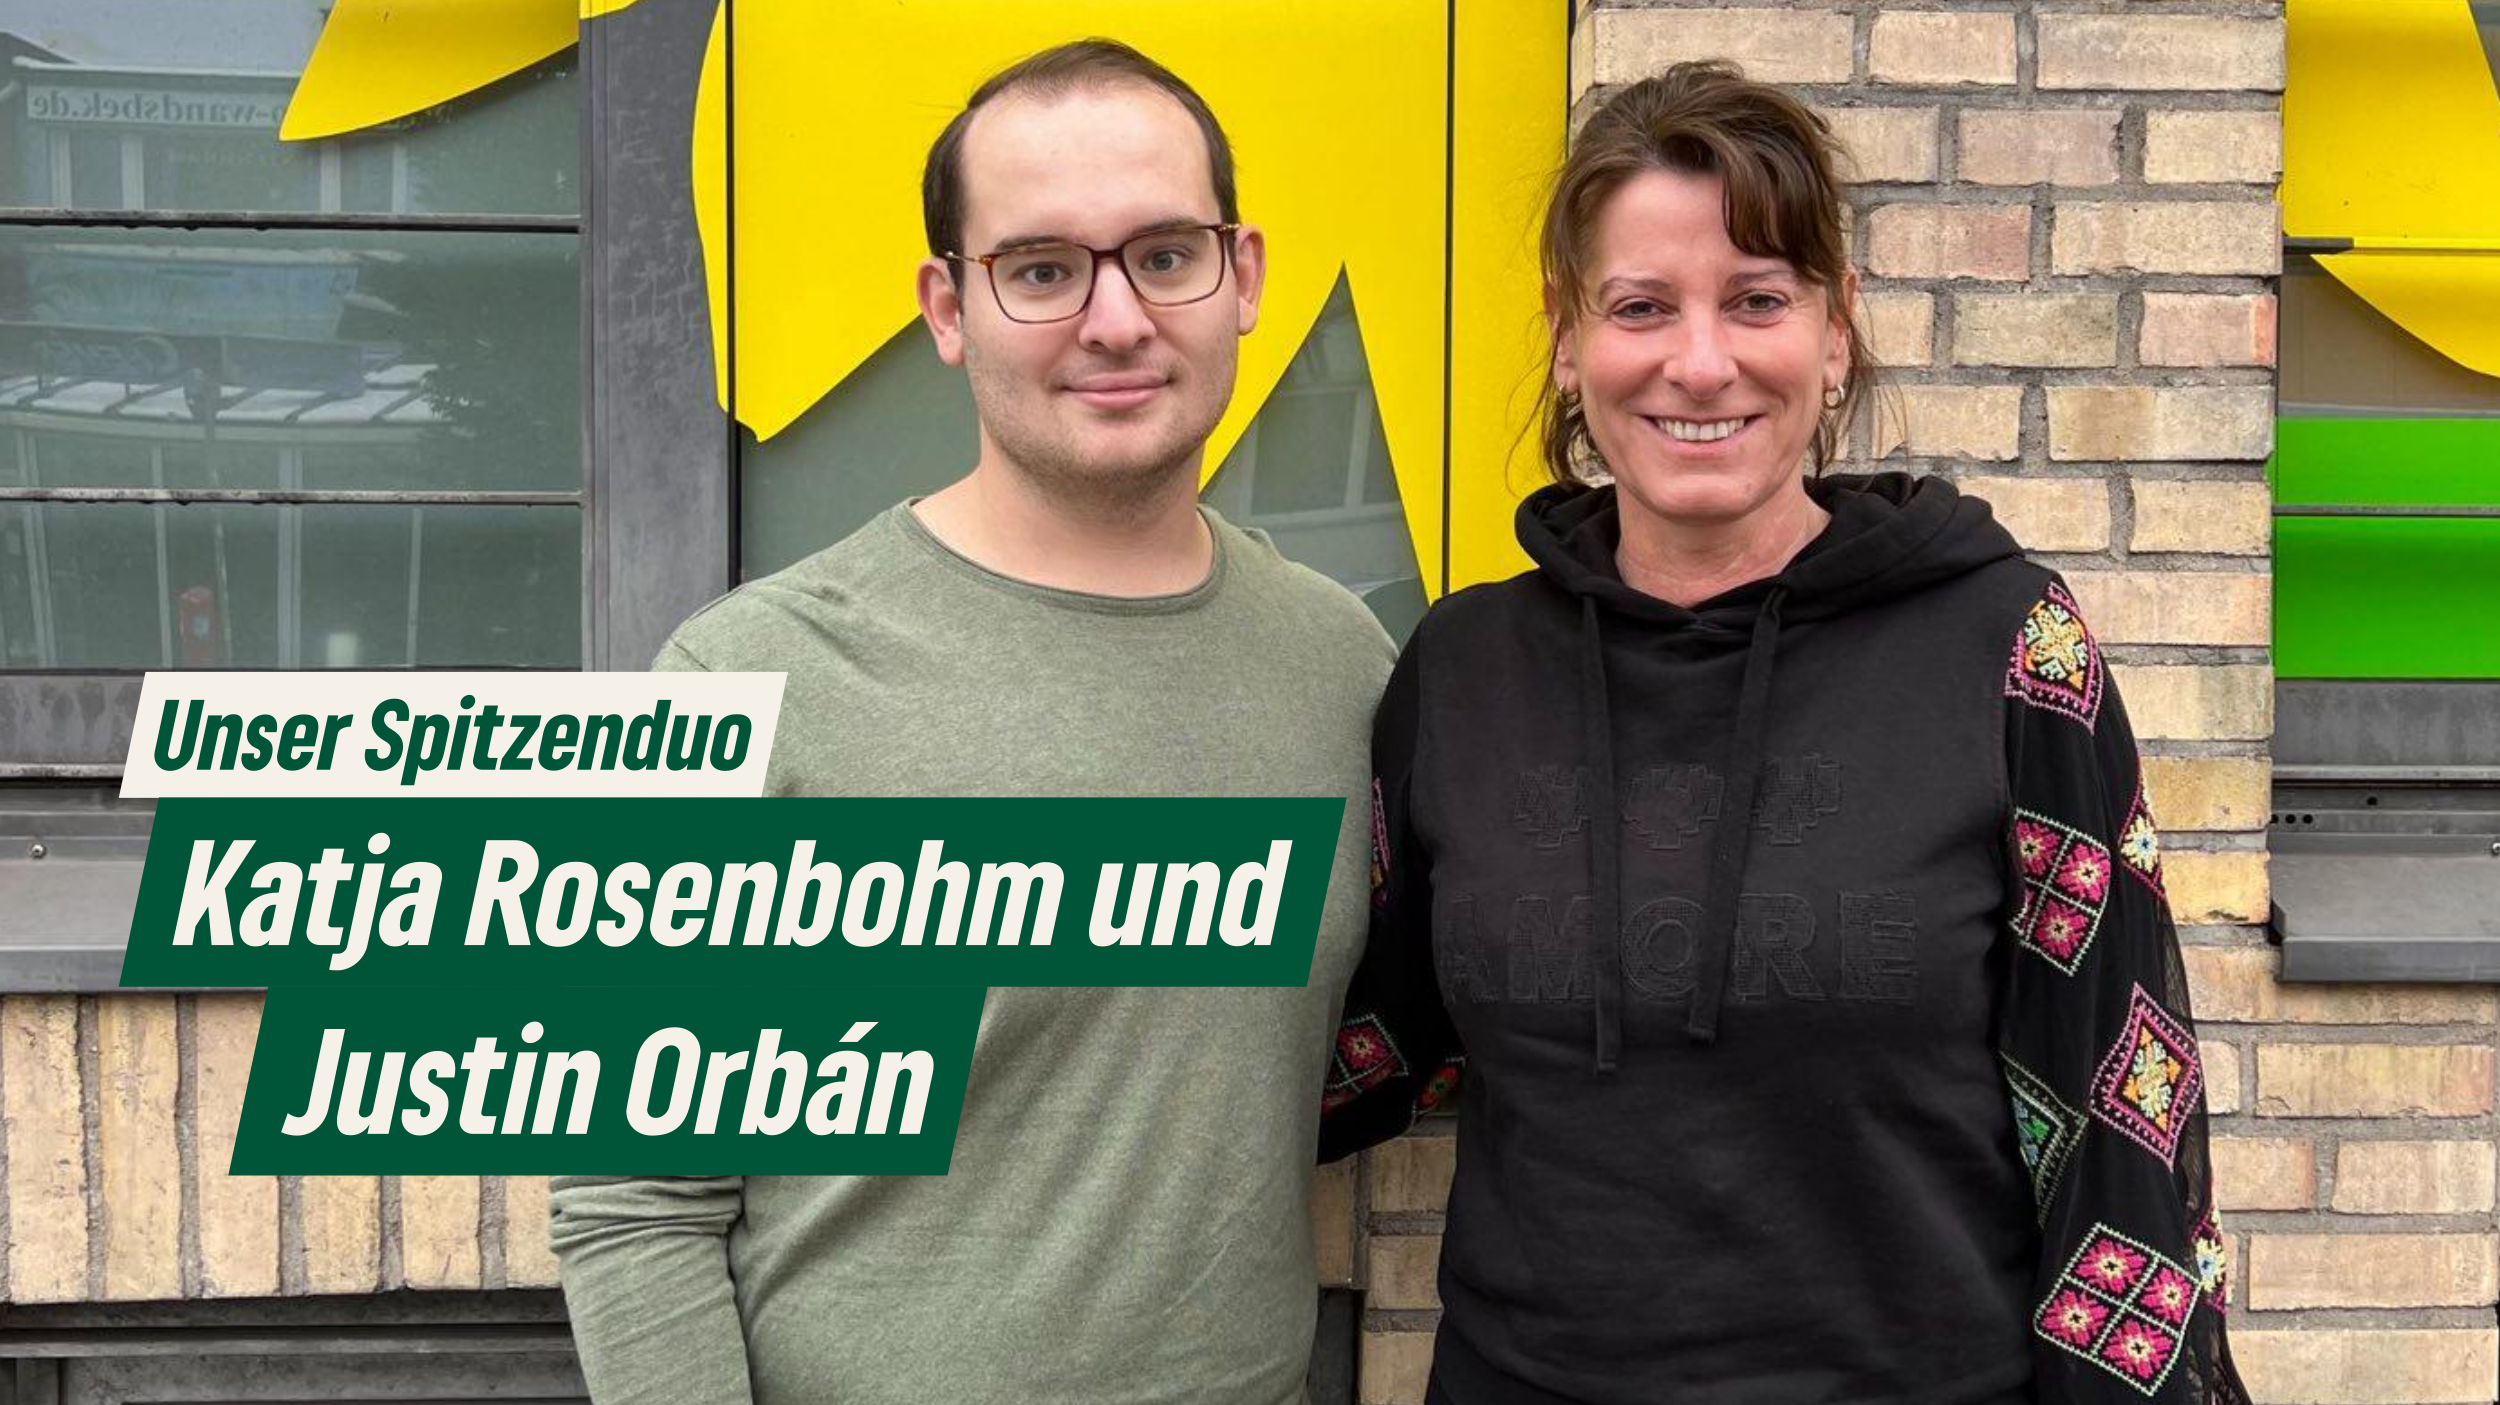 Unser Spitzenduo Katja Rosenbohm und Justin Orbán